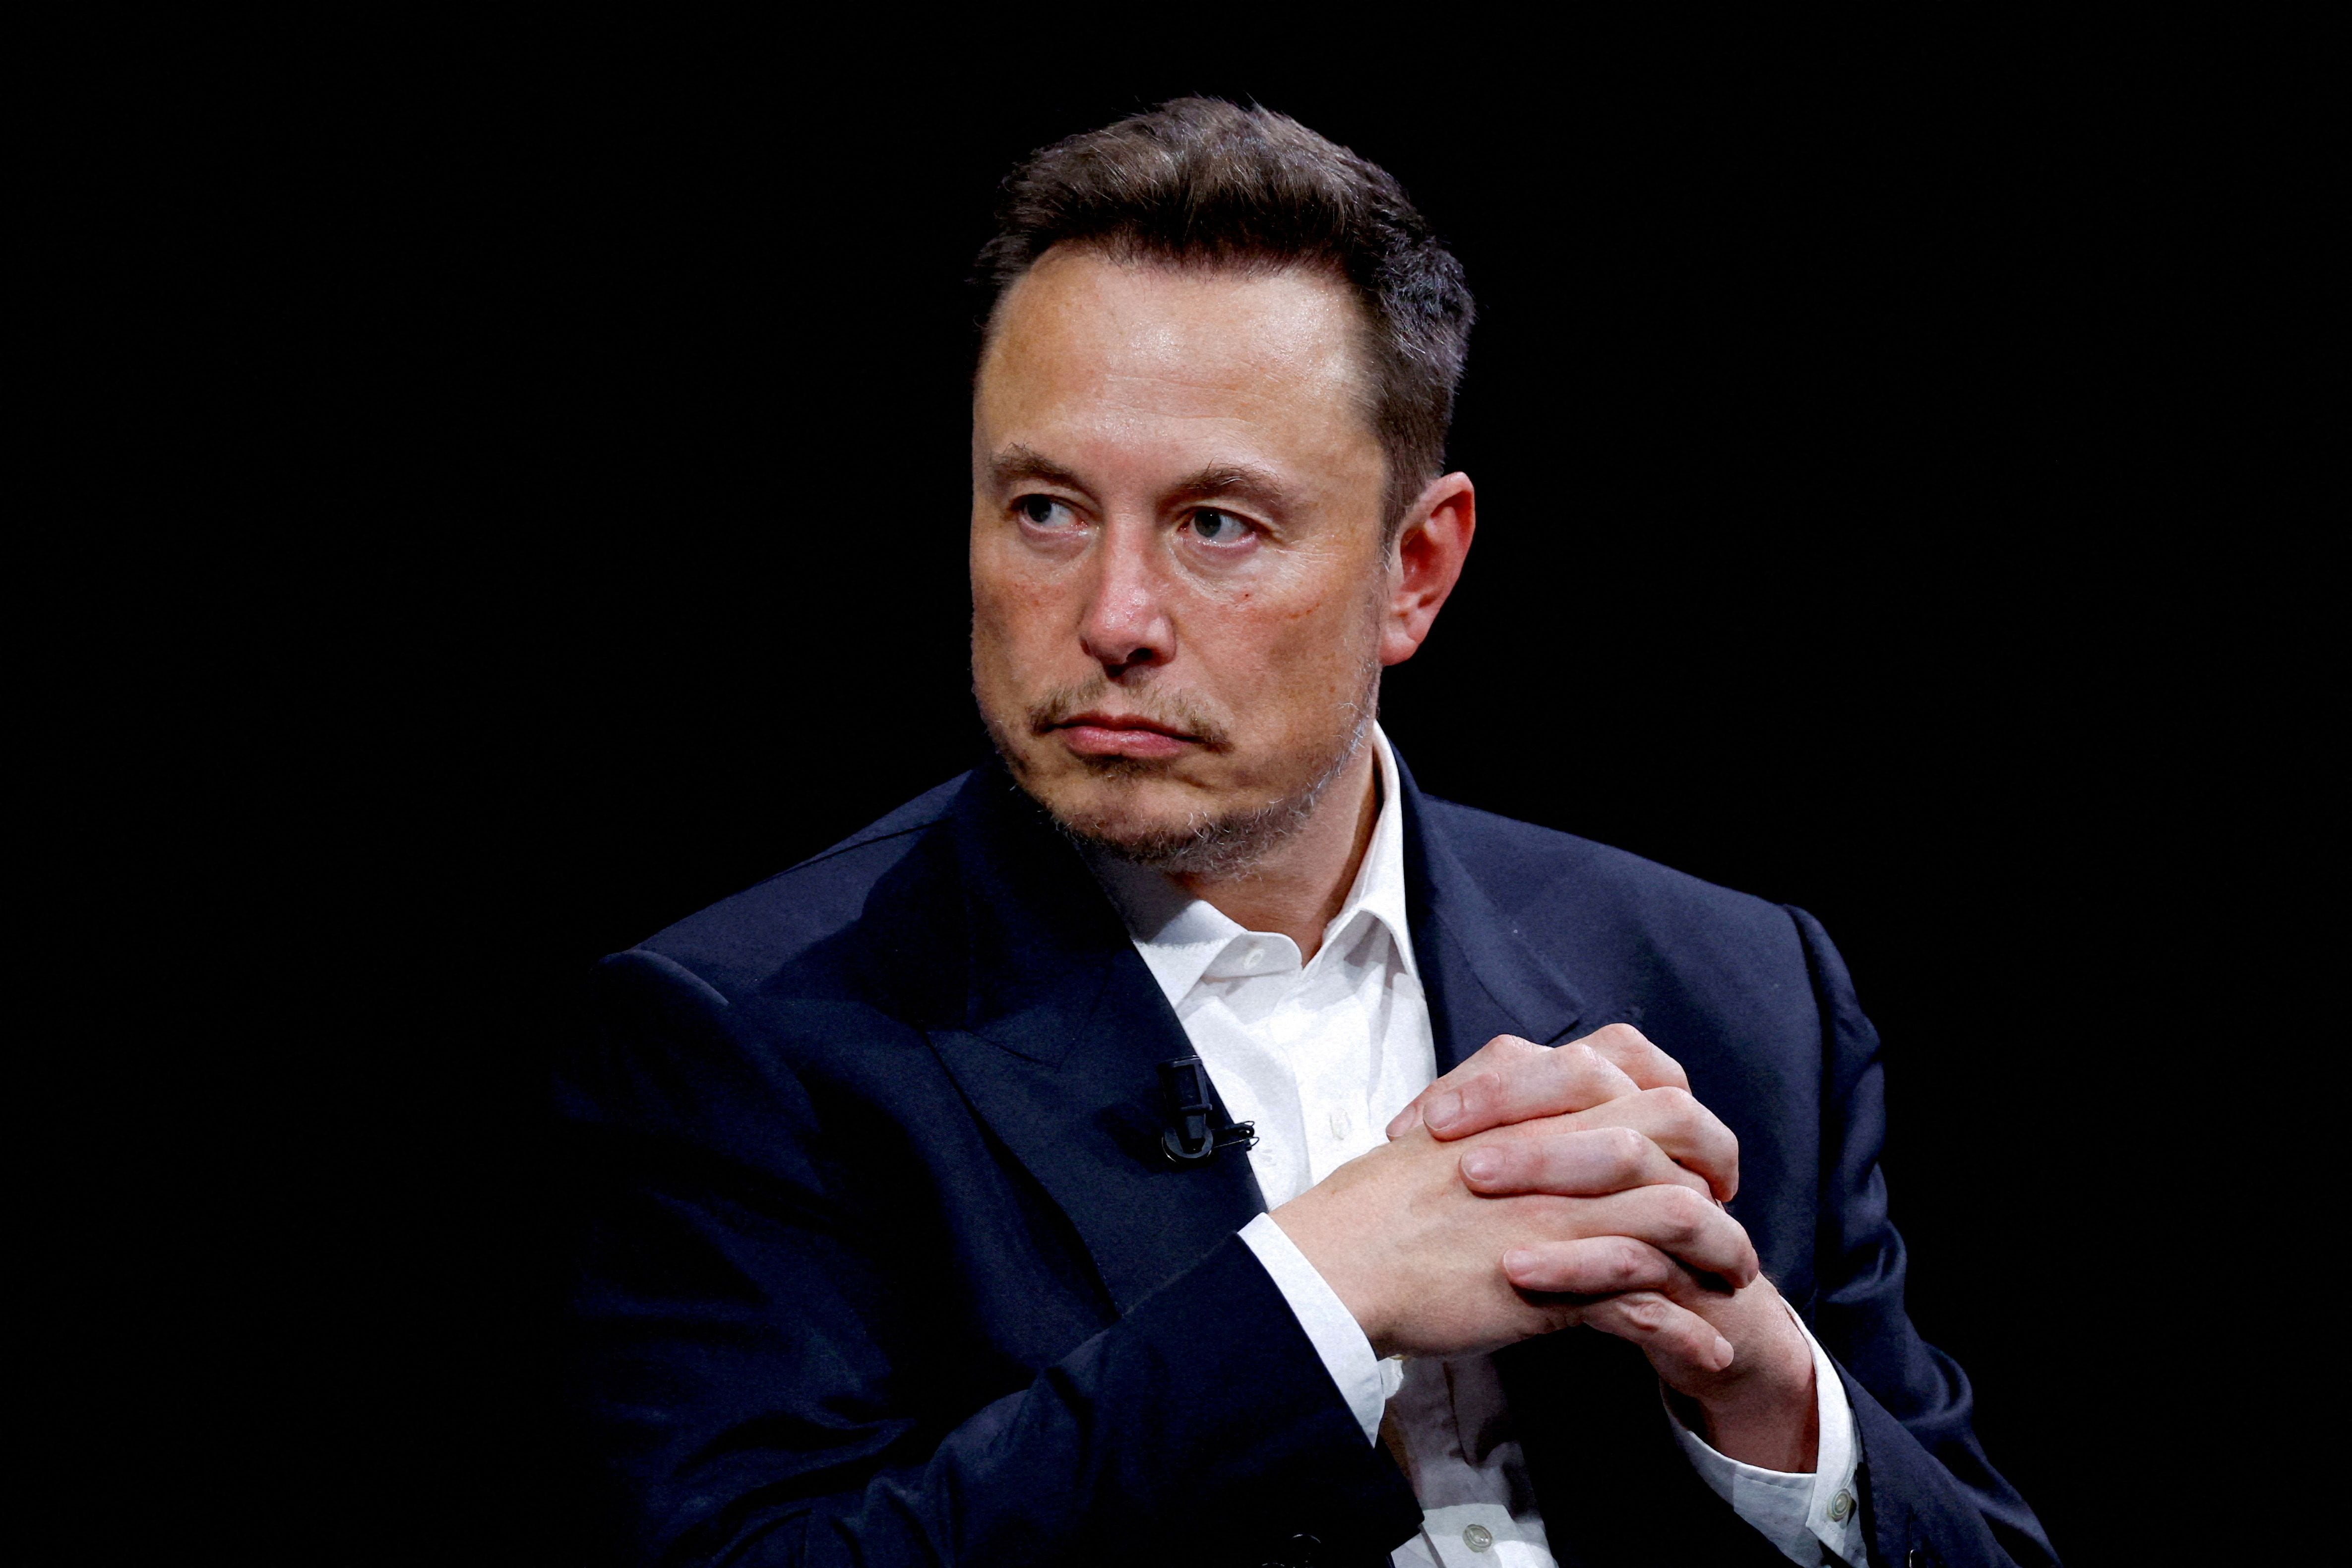 Musk aseguró que en unos meses X sería la forma en que se enviarían mensajes y llamadas en todo el mundo. REUTERS/Gonzalo Fuentes/File Photo